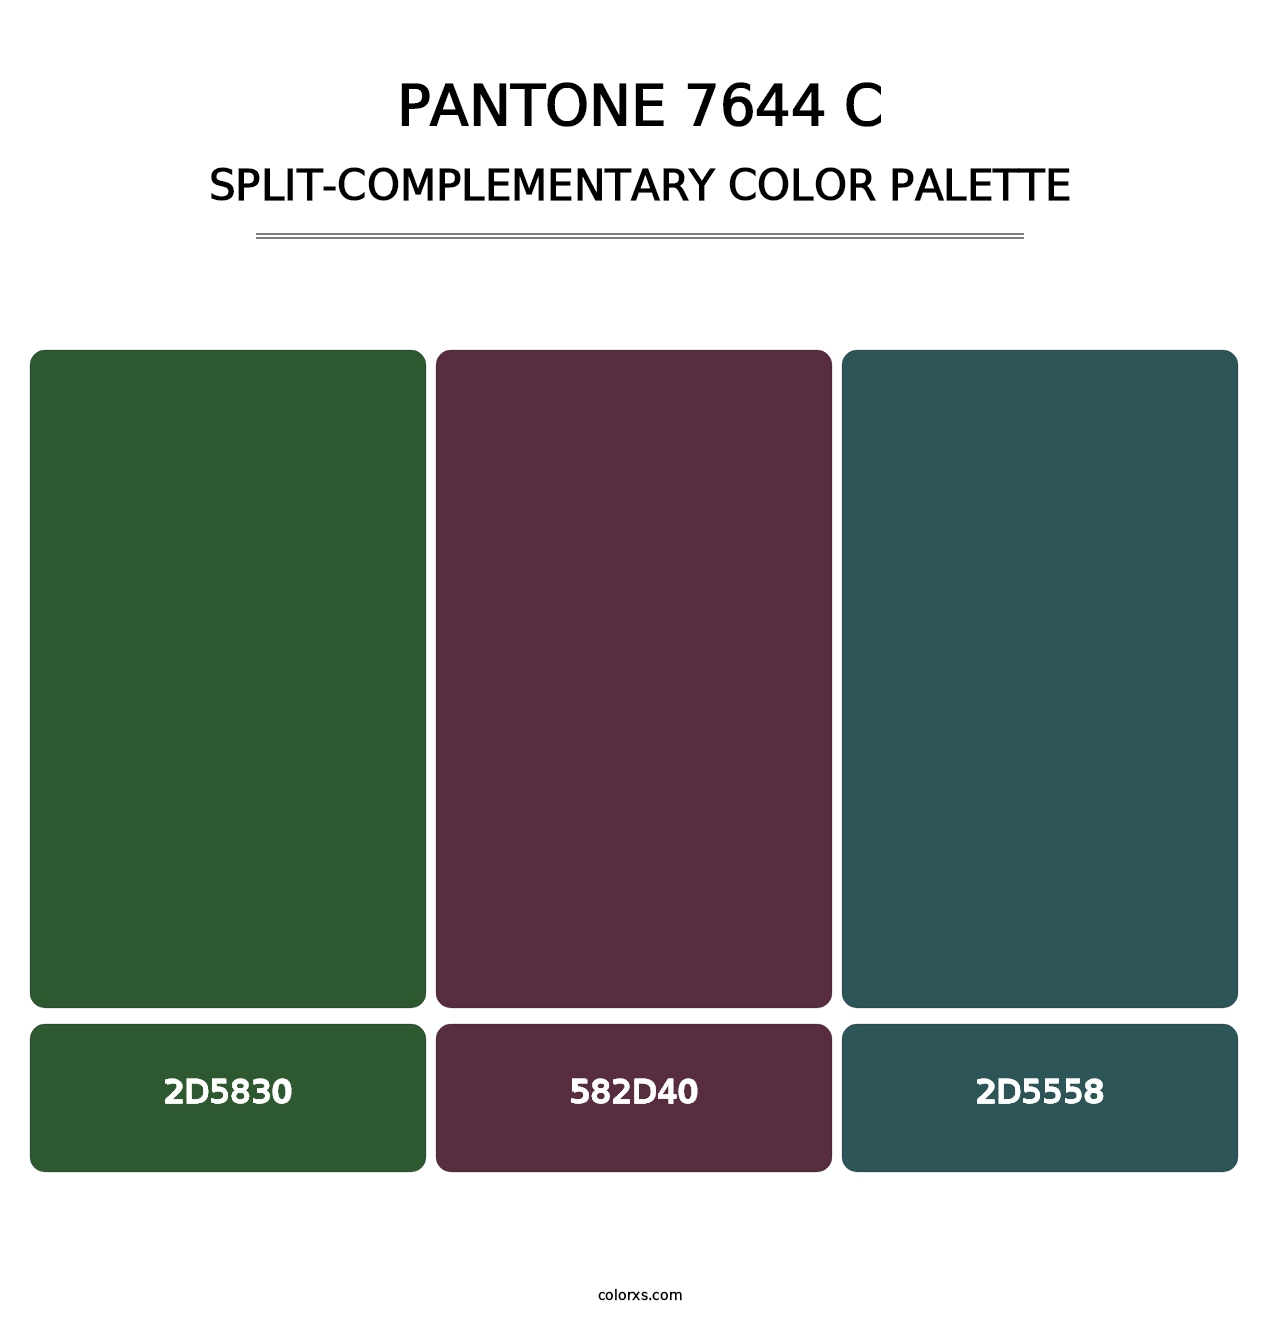 PANTONE 7644 C - Split-Complementary Color Palette